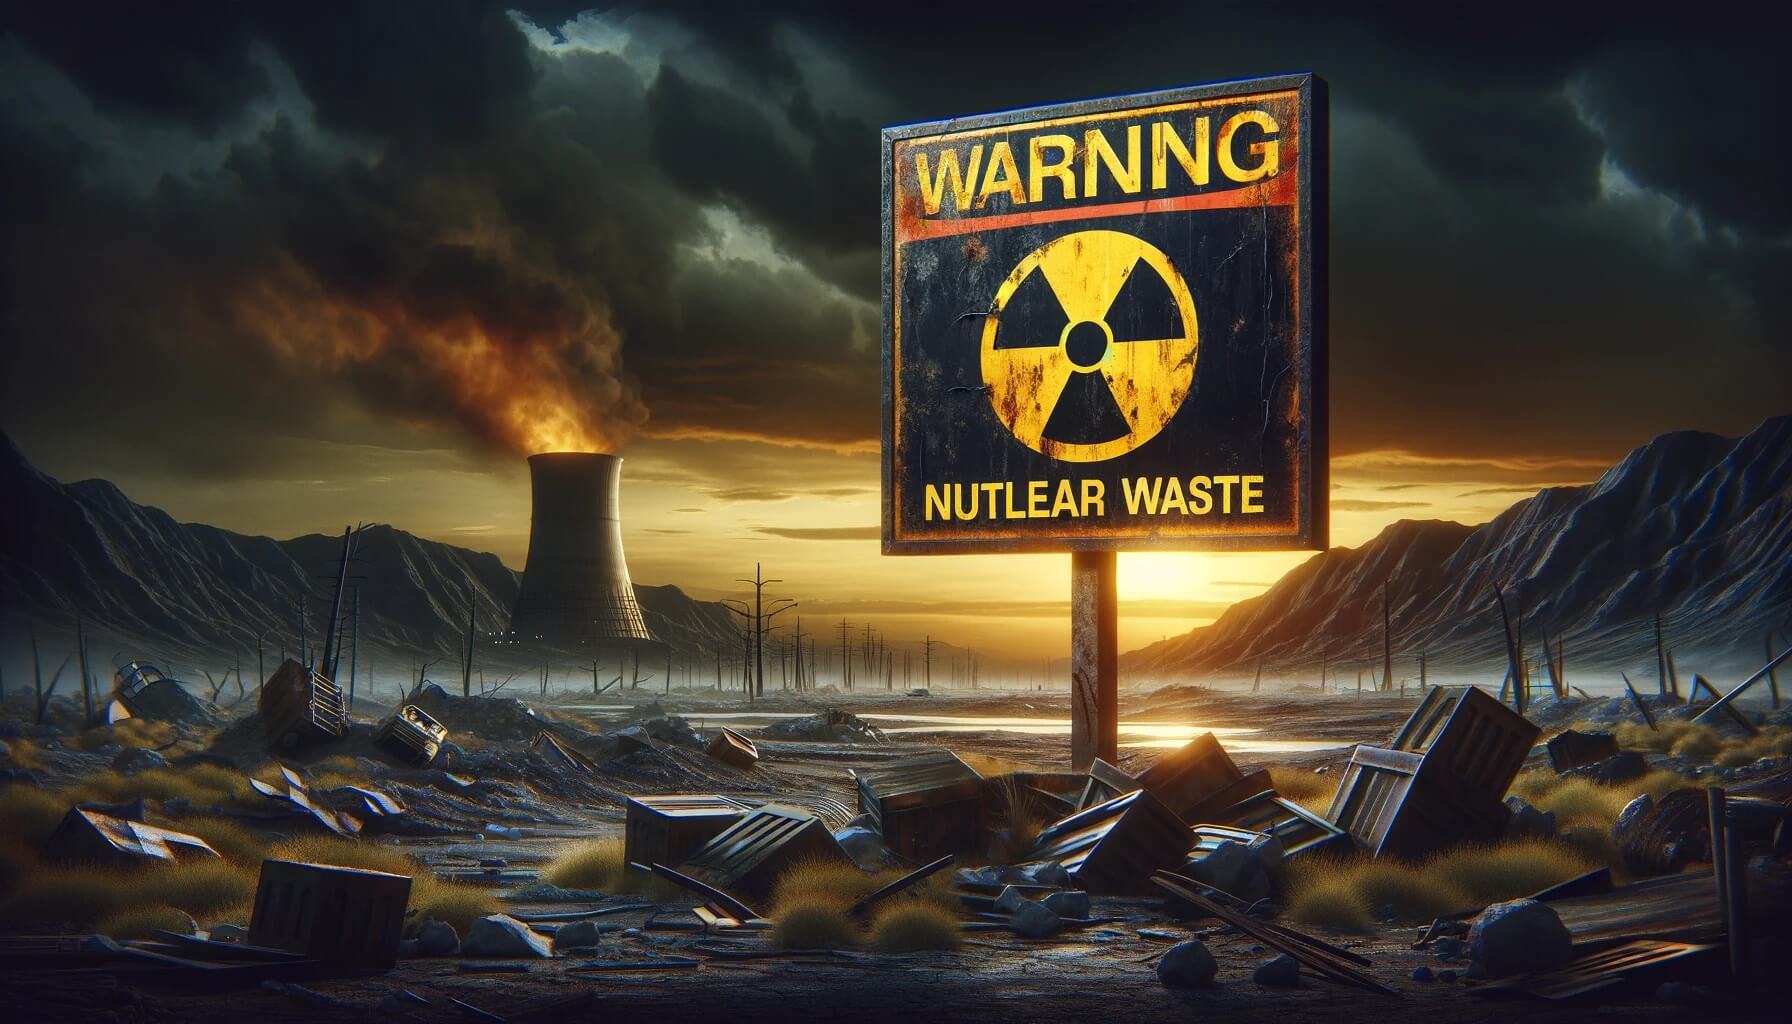 Как предупредить людей будущего о радиоактивных отходах  самые странные идеи